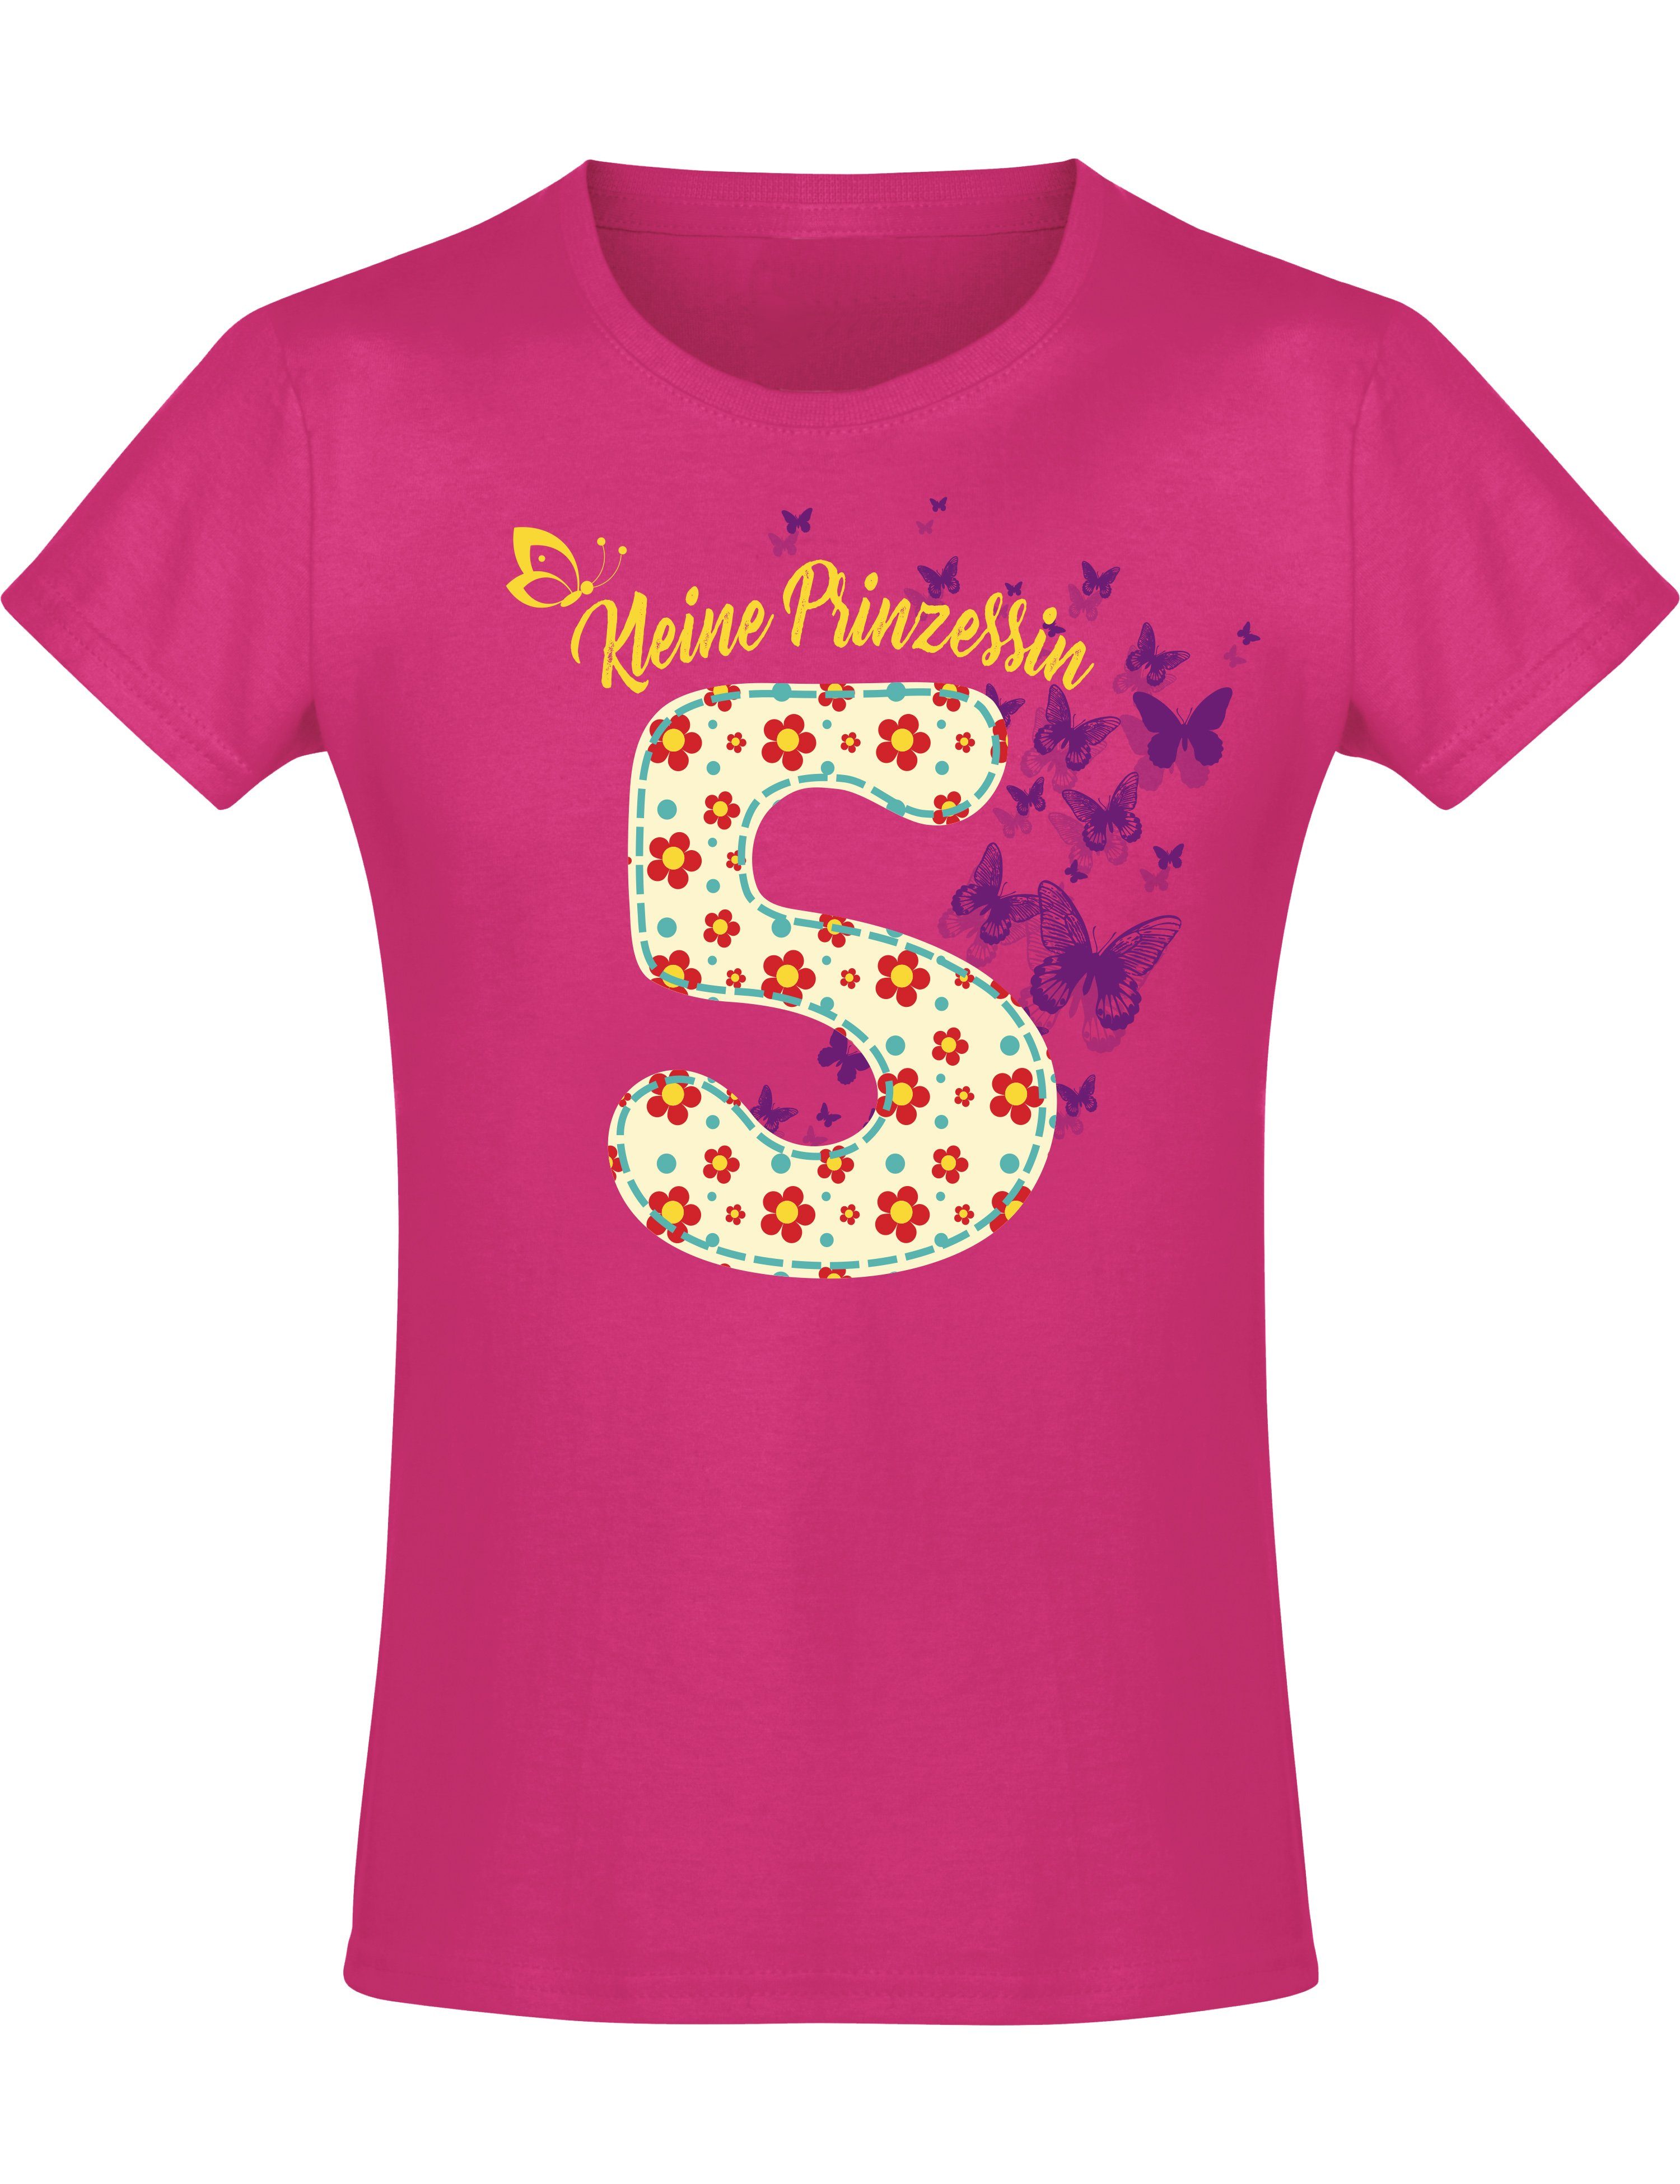 Baddery Print-Shirt Geburstagsgeschenk für Mädchen : 5 Jahre mit Blumen, hochwertiger Siebdruck, aus Baumwolle | T-Shirts